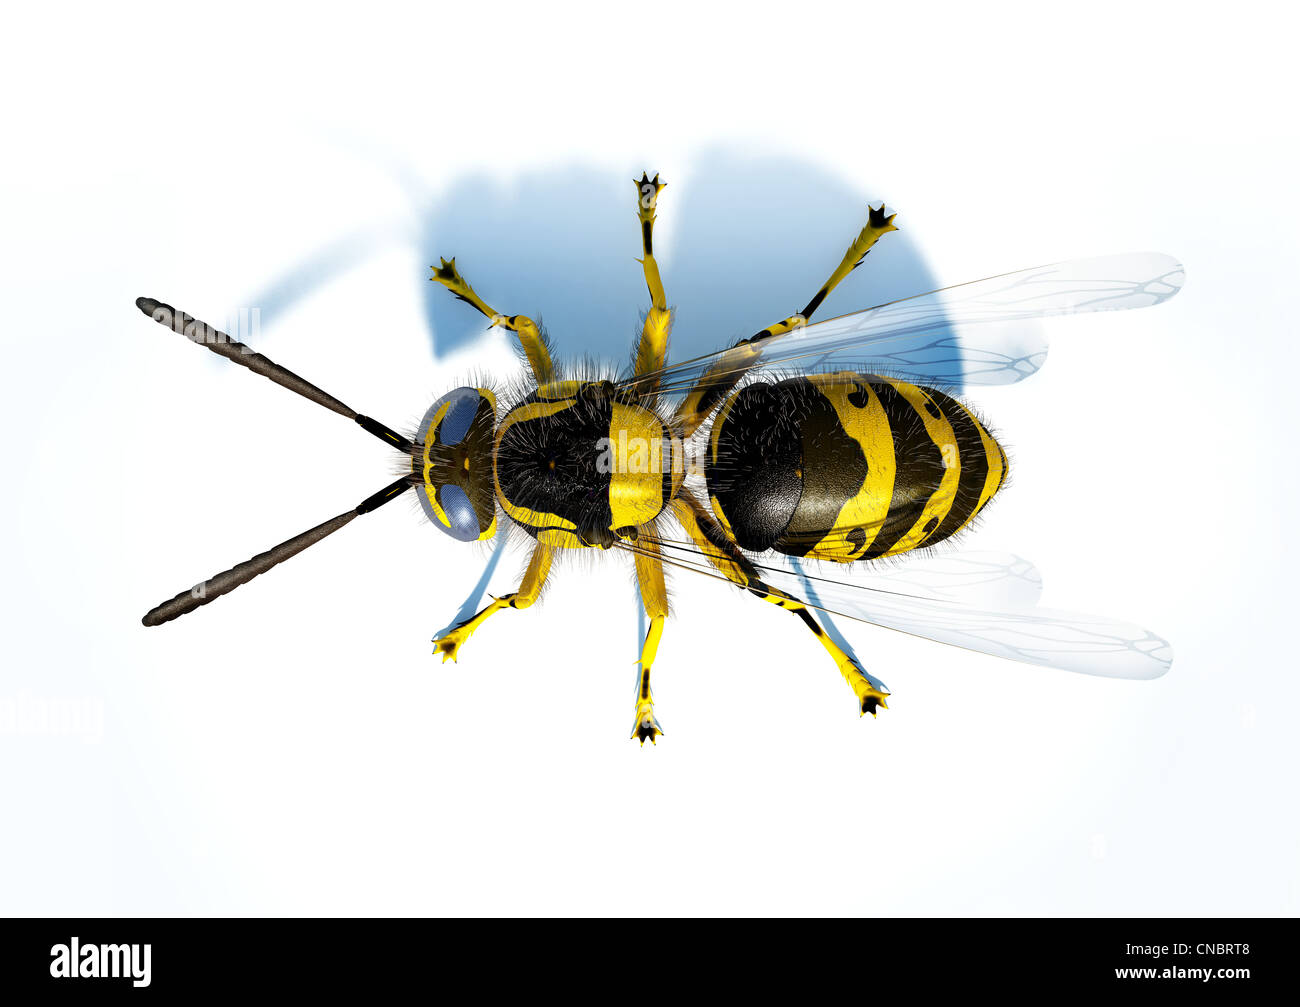 Hornet Wespe auf weiße Fläche von oben betrachtet. Stockfoto